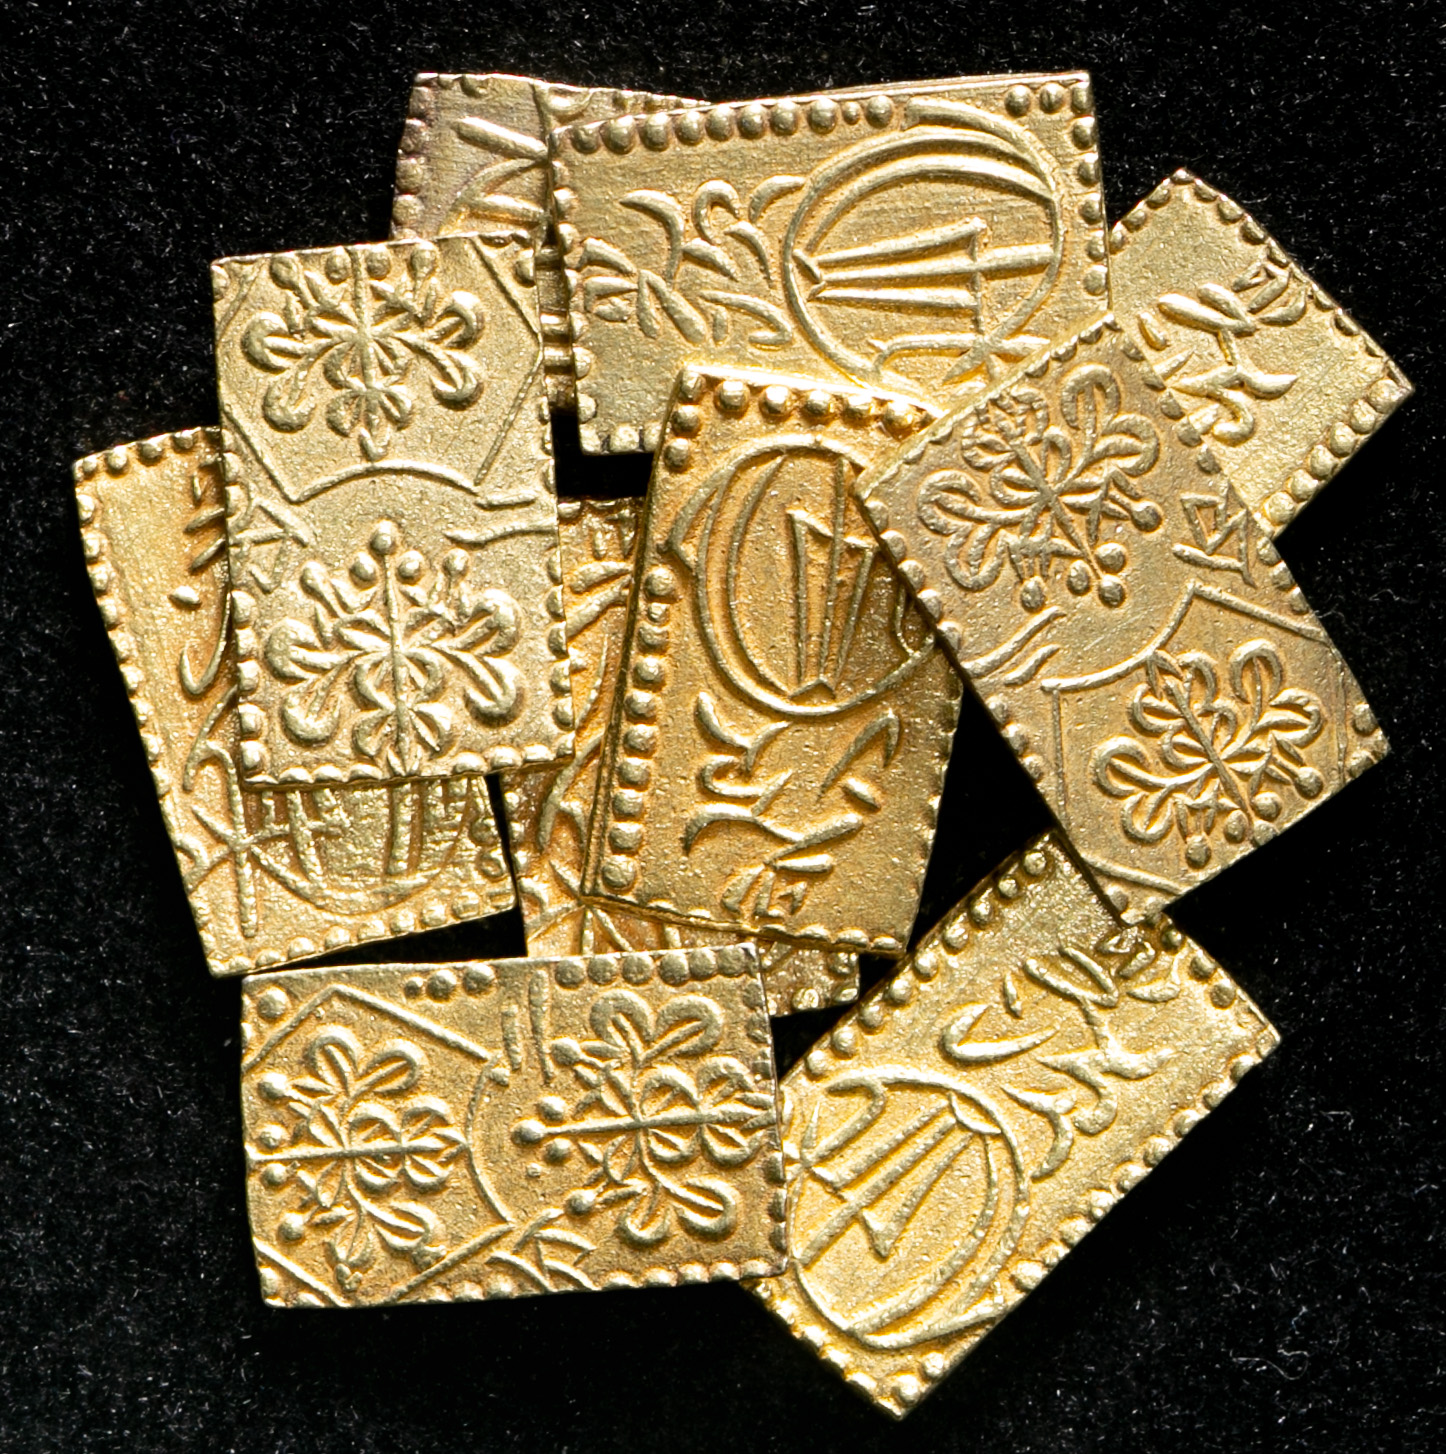 钱币博物馆 明治二分判金meiji 2bu Ban Kin 明治元年 明治2年 1868 69 計10枚